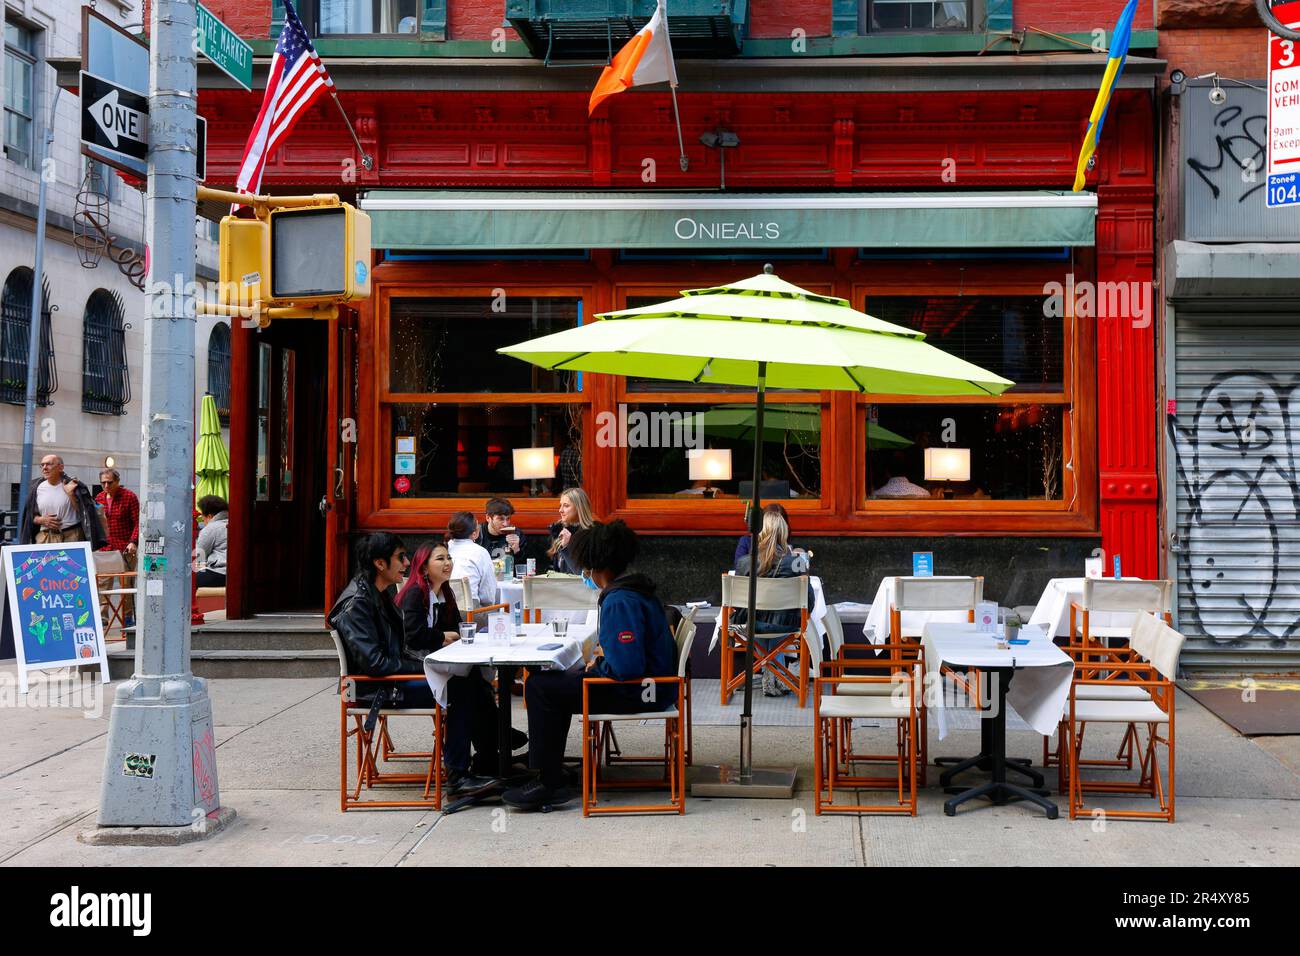 Onieal's, 174 Grand St, New York, NYC, Foto einer Bar und eines Restaurants in Manhattans Stadtviertel Little Italy. Stockfoto